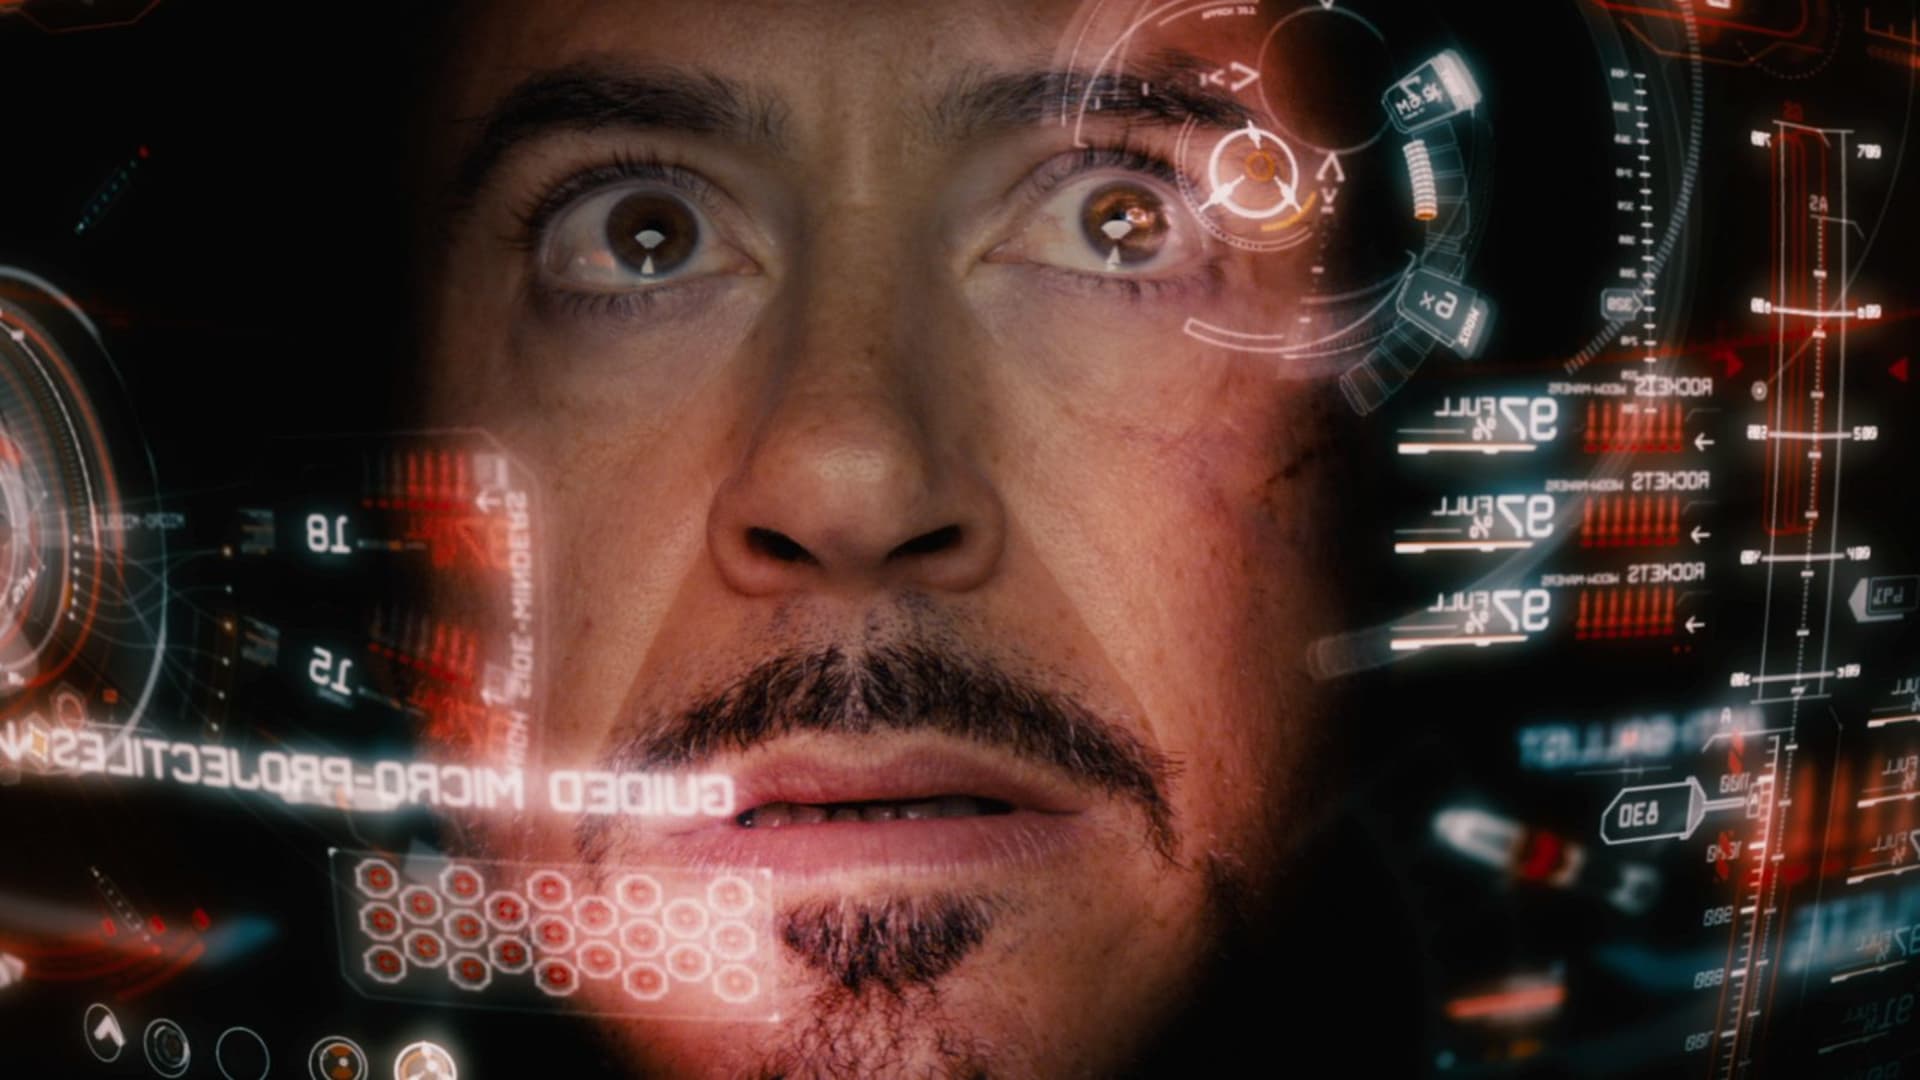 Tony Stark očividně nestáhnul všechna data...